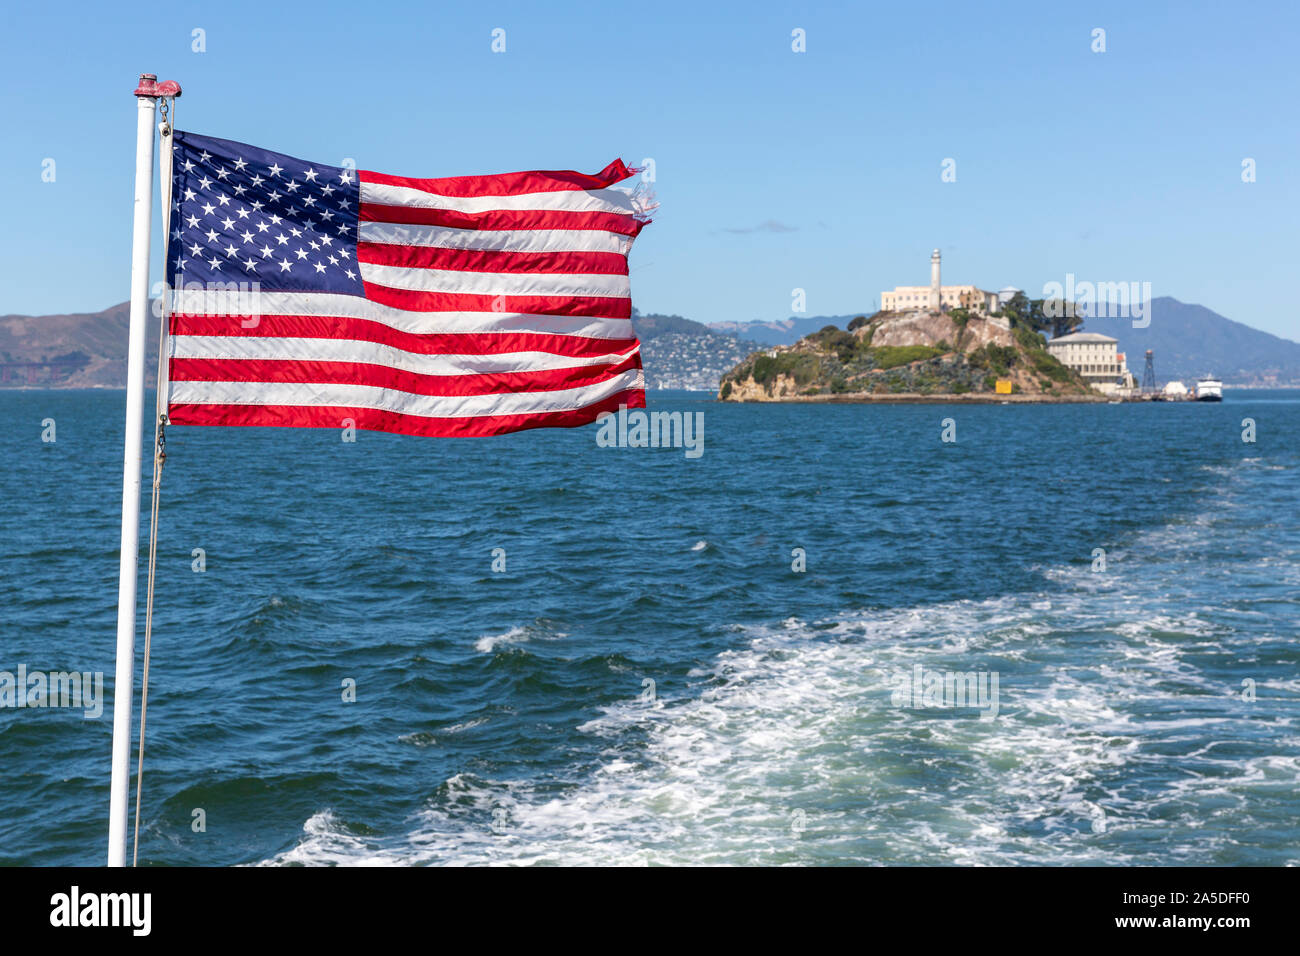 Das Sternenbanner Flagge von einem Boot mit Alcatraz Island aus Fokus hinter. Stockfoto